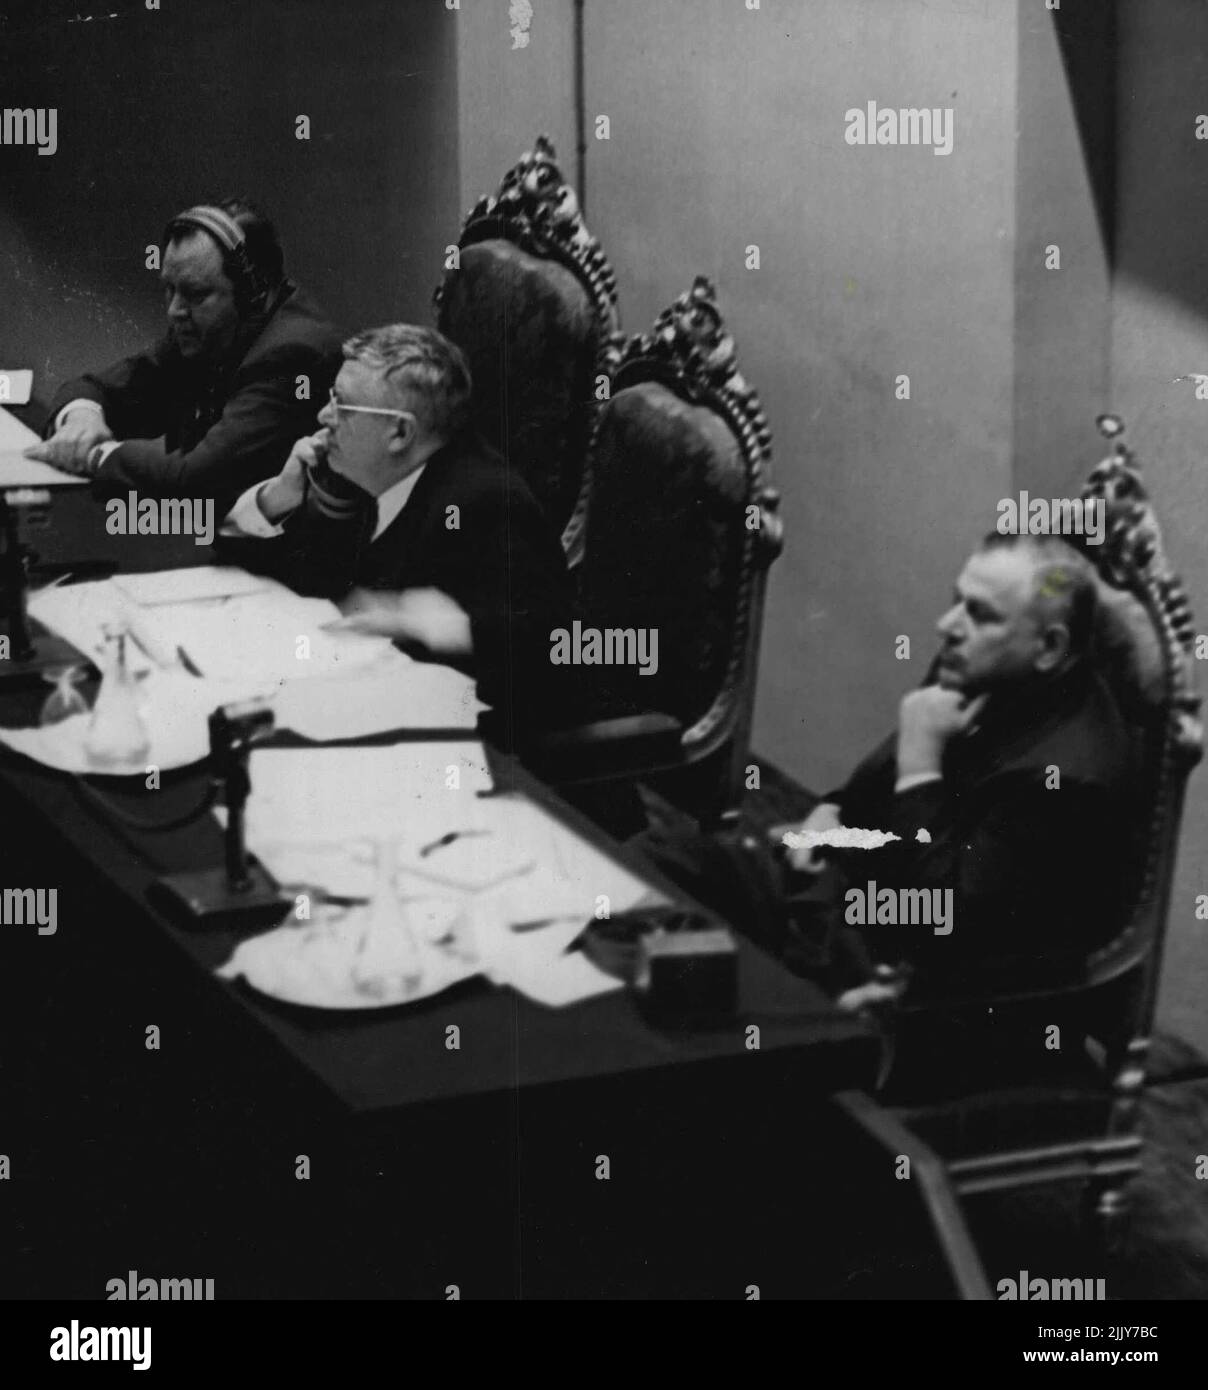 ONU en París -- La plataforma del Presidente: F. l.t.r. El Secretario General de las Naciones Unidas, Trygve Lie; el Presidente de la Asamblea, Dr. H.V. EVATT:- Andrew Cordier, asistente ejecutivo de Trygve Lie. 11 de enero de 1949. (Foto de Philip Boucas, Camera Press). Foto de stock